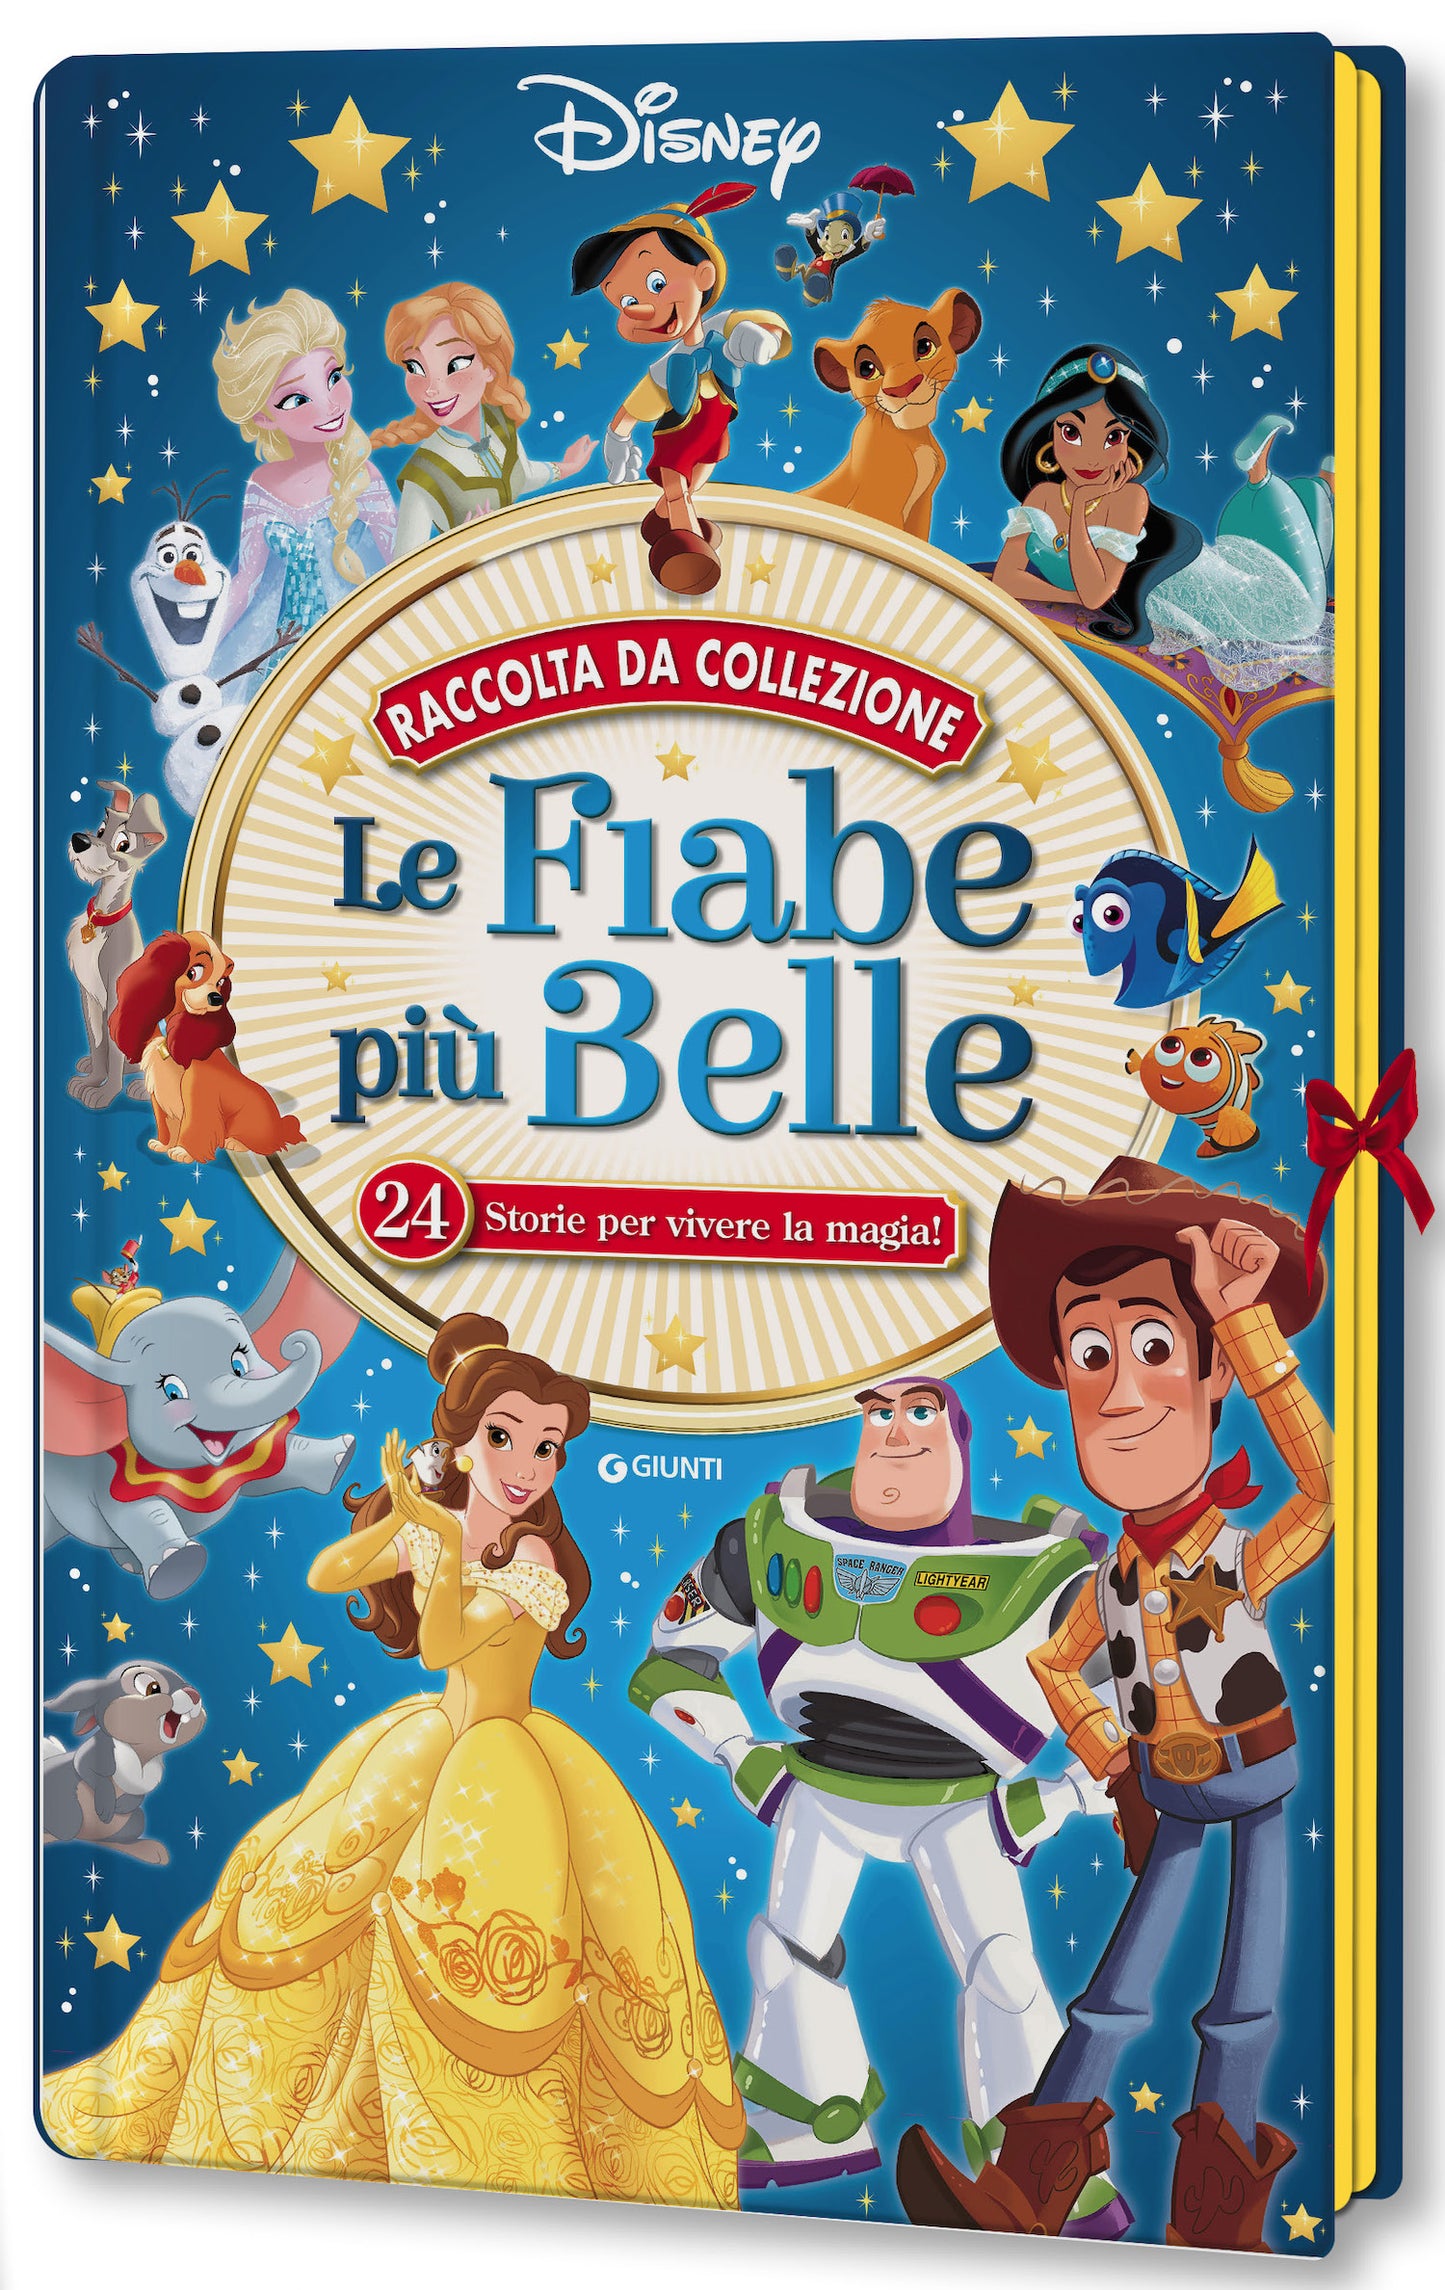 Le Fiabe più belle Disney - Raccolta da collezione. 24 Storie per vivere la magia!